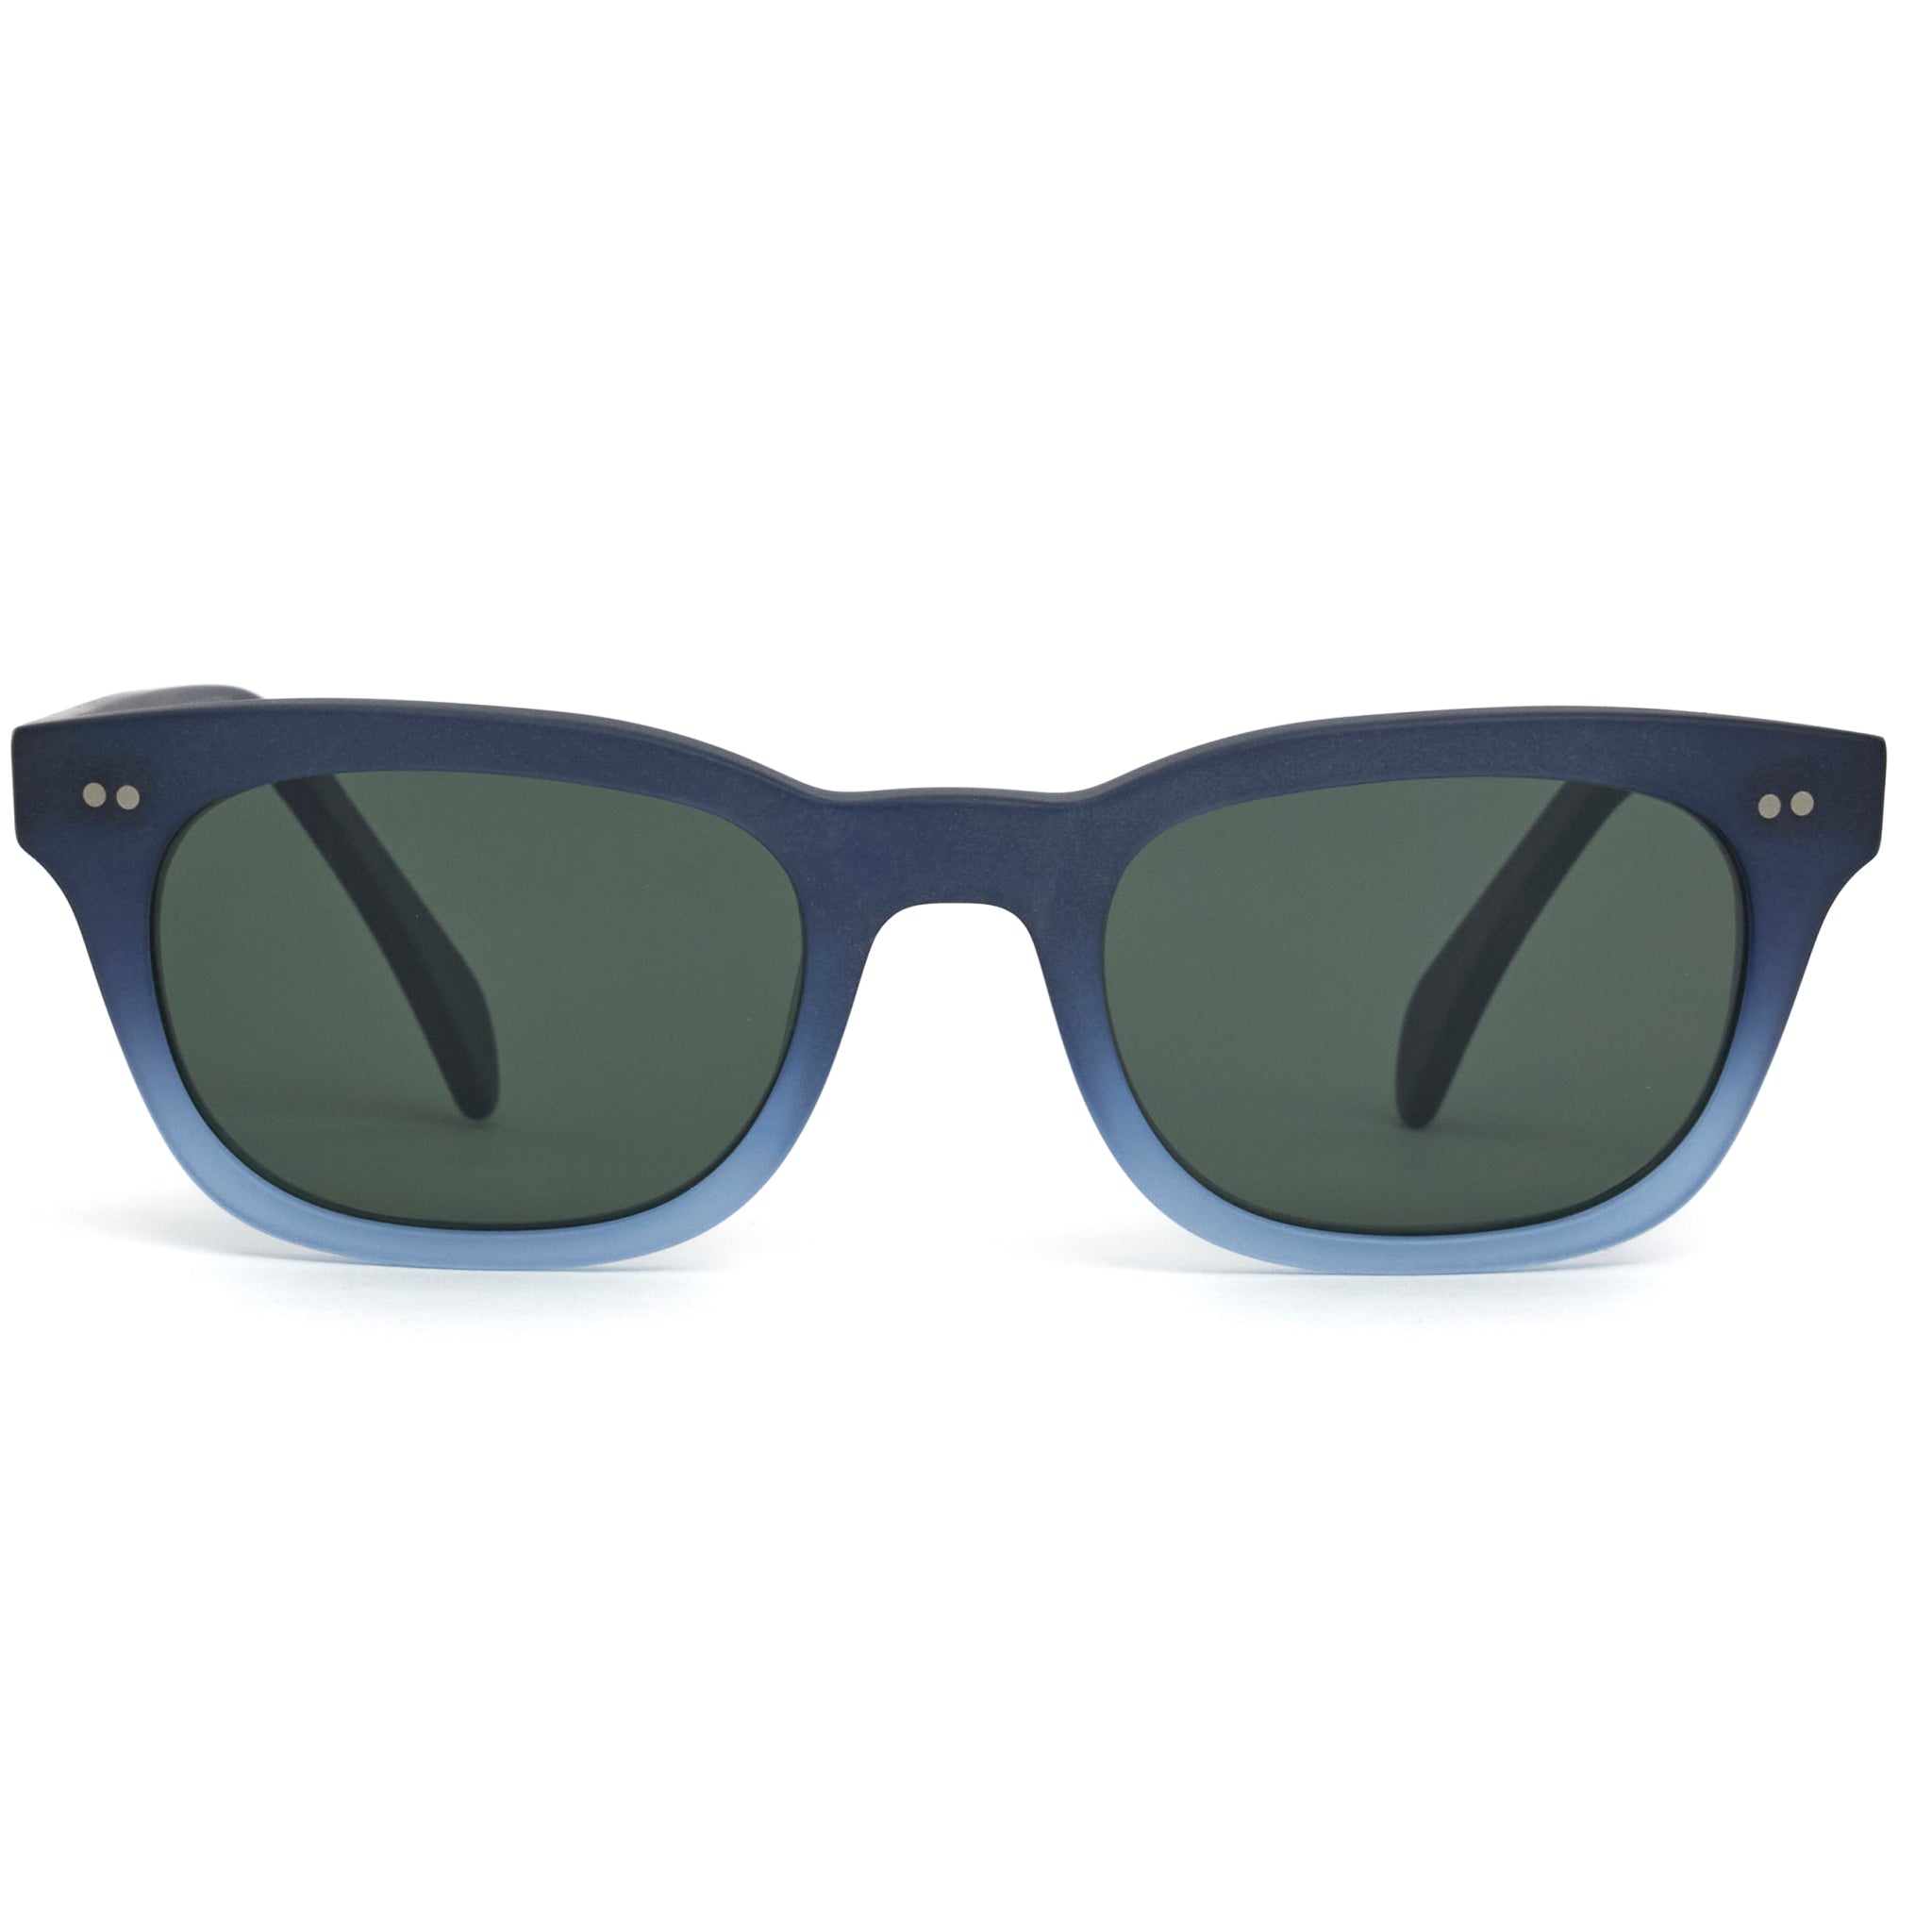 Silver Oversized Resin Frame Fade Lens Sunglasses | PrettyLittleThing